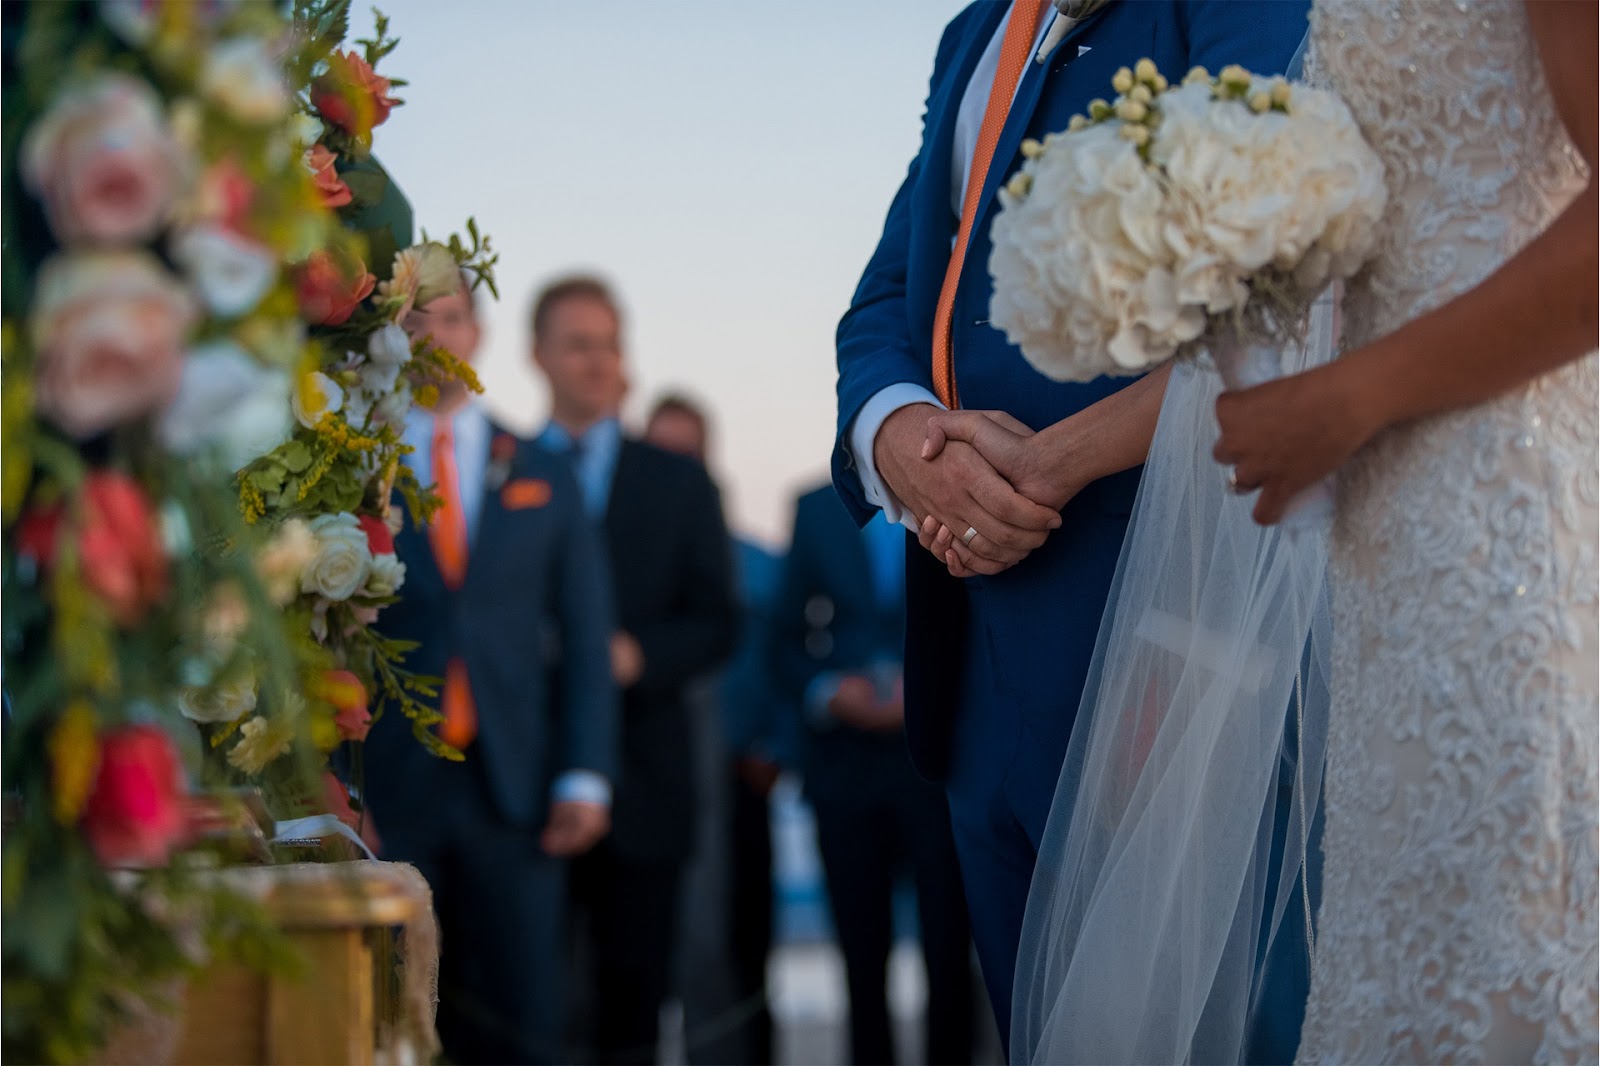 wedding day timeline - Ceremony - Minstrel Court